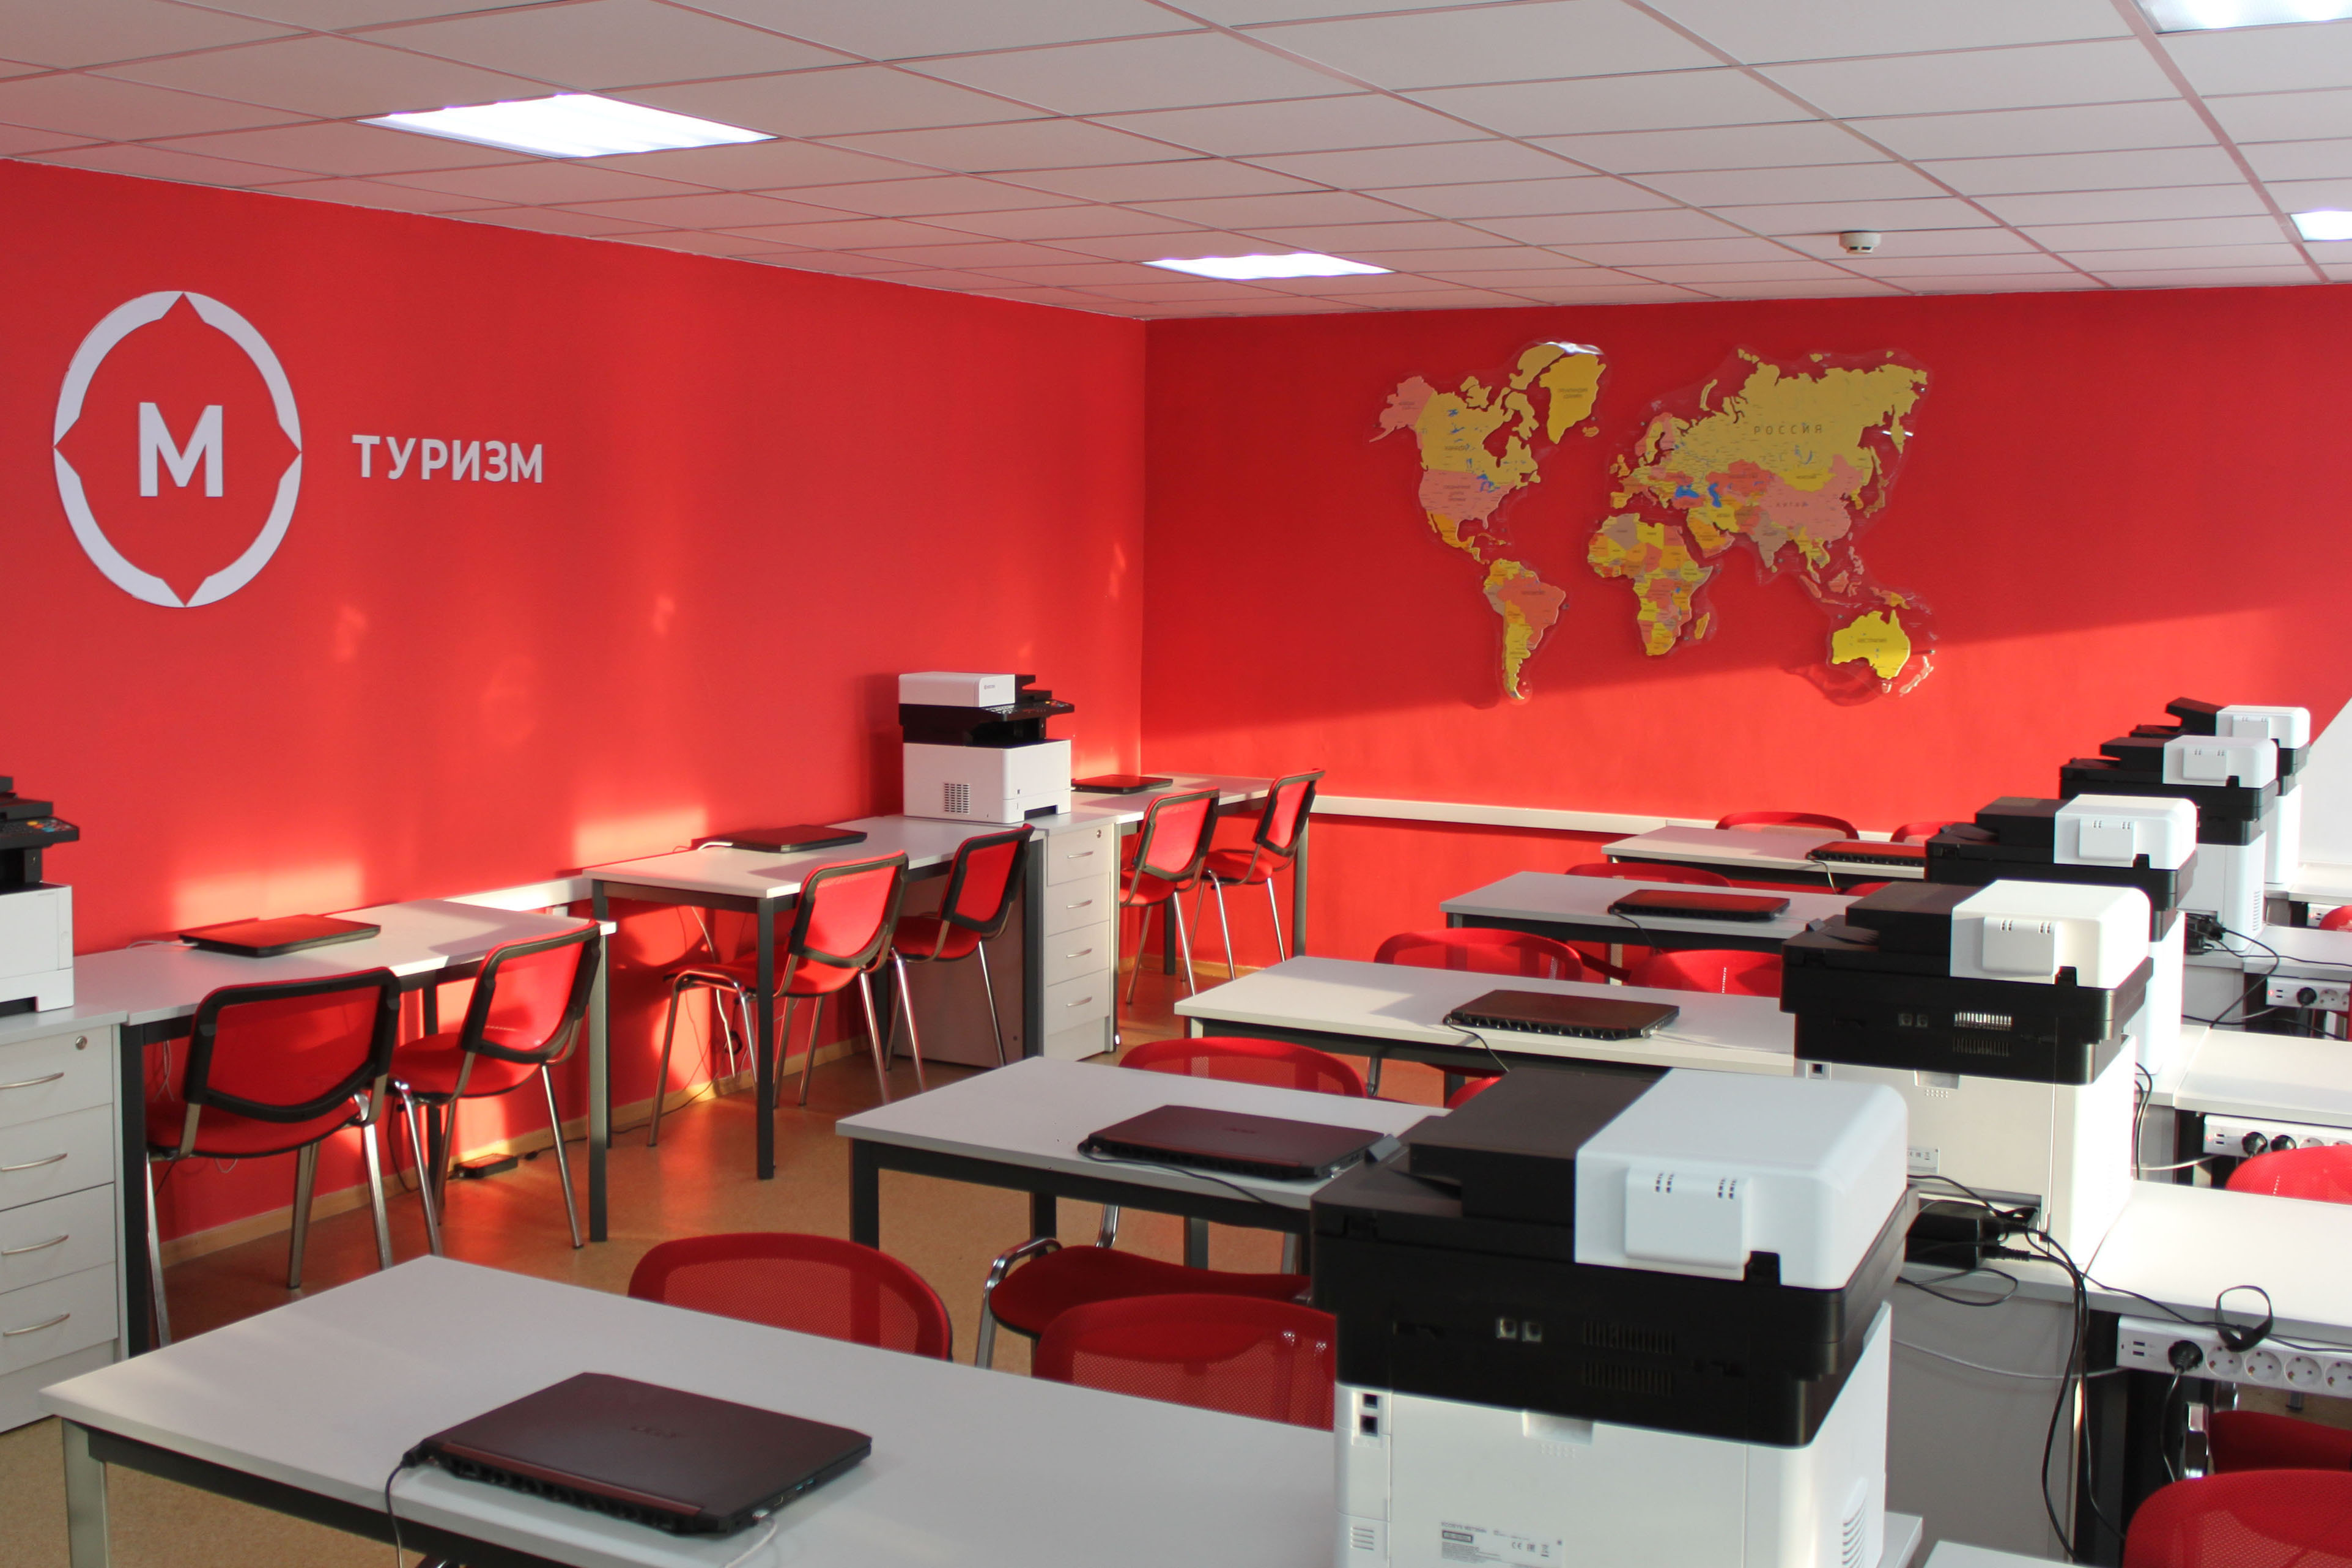 10 новых мастерских откроются в колледжах Кузбасса в рамках нацпроекта «Образование»